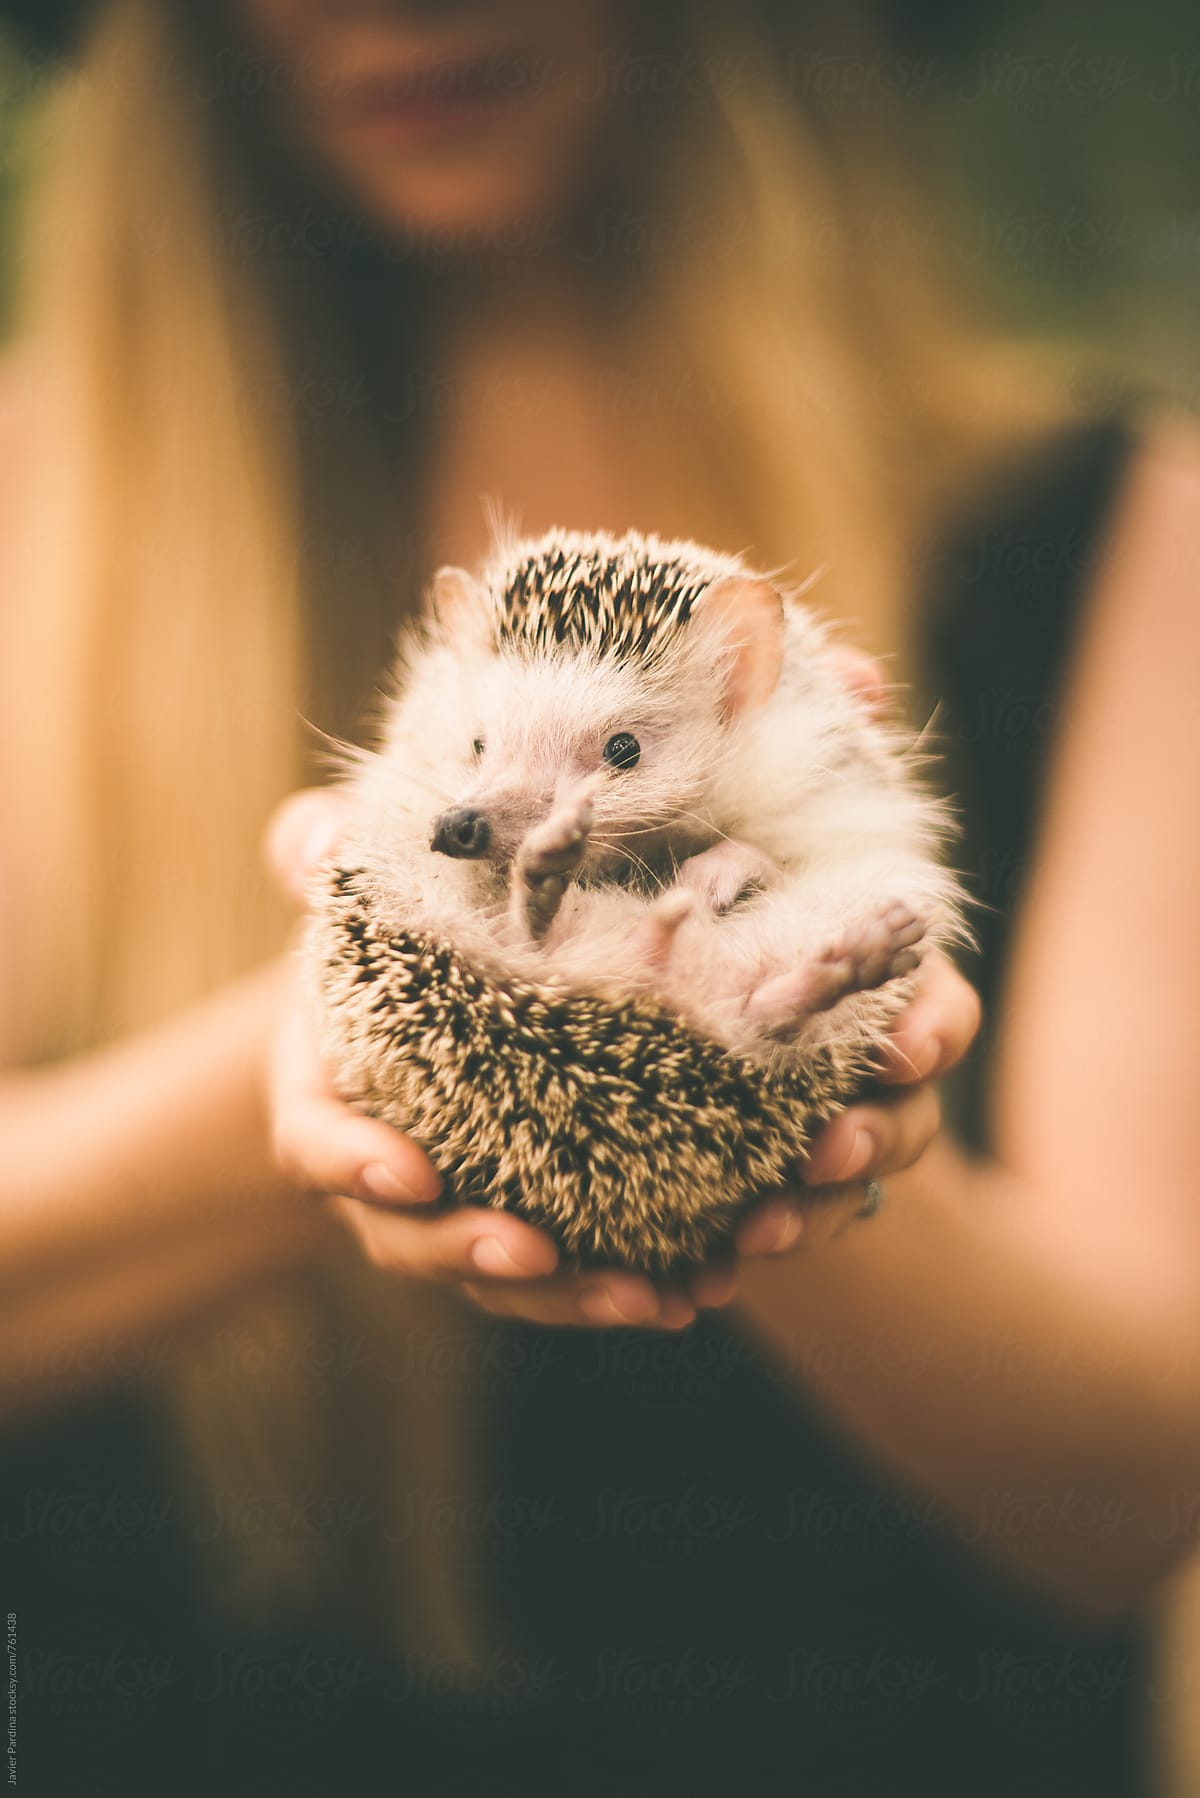 hedgehog in the hands